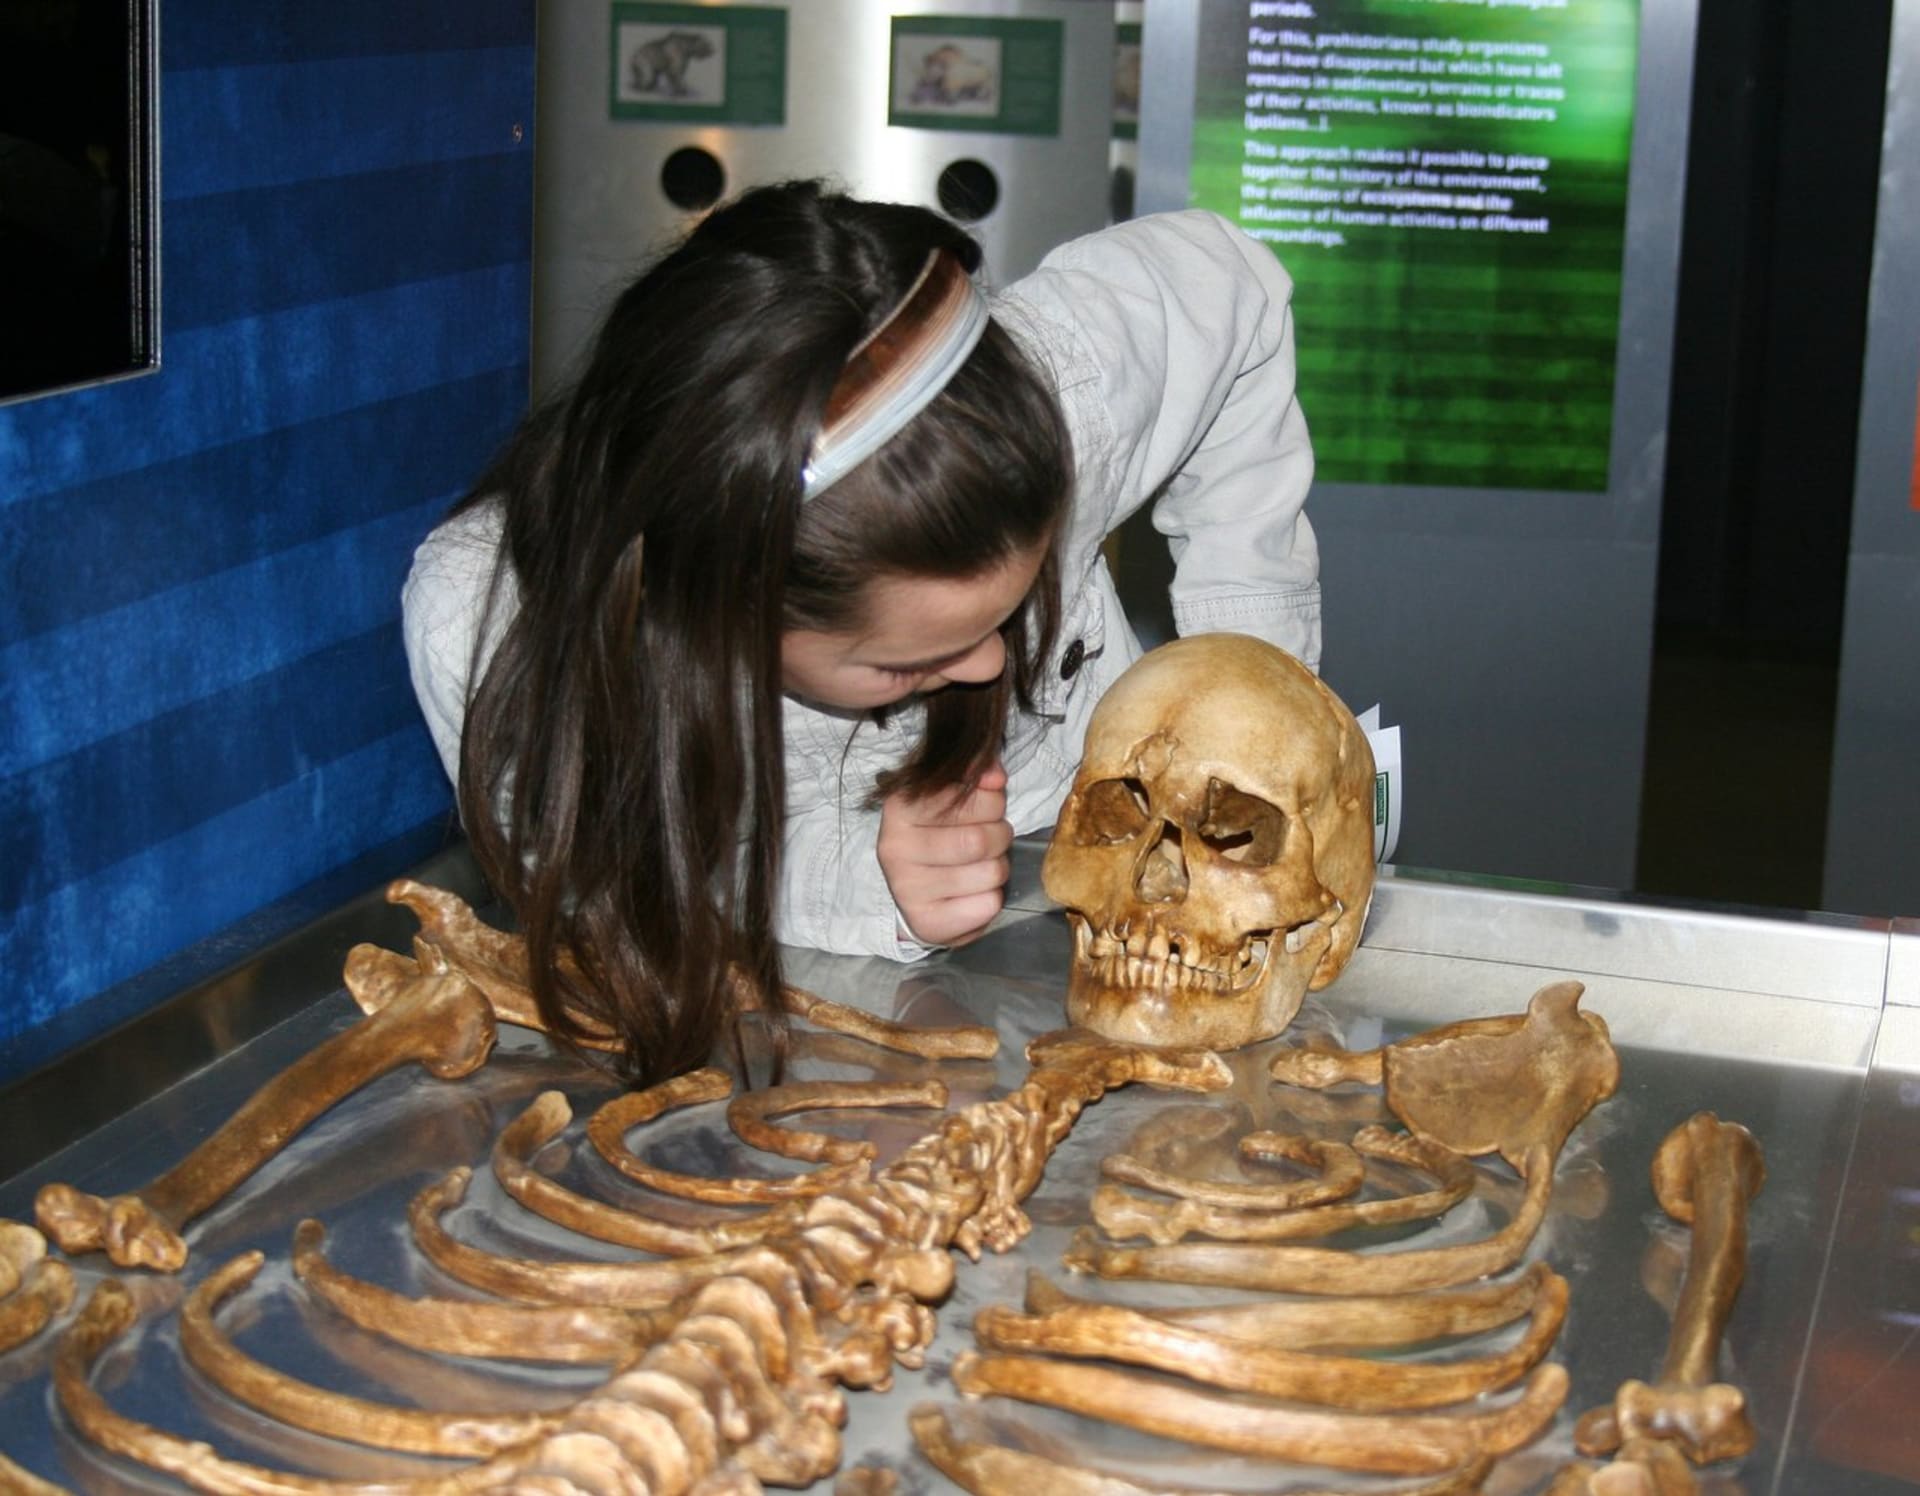 Kostry dokážou prozradit mnohé – například zdravotní stav lidí pohřbených před staletími